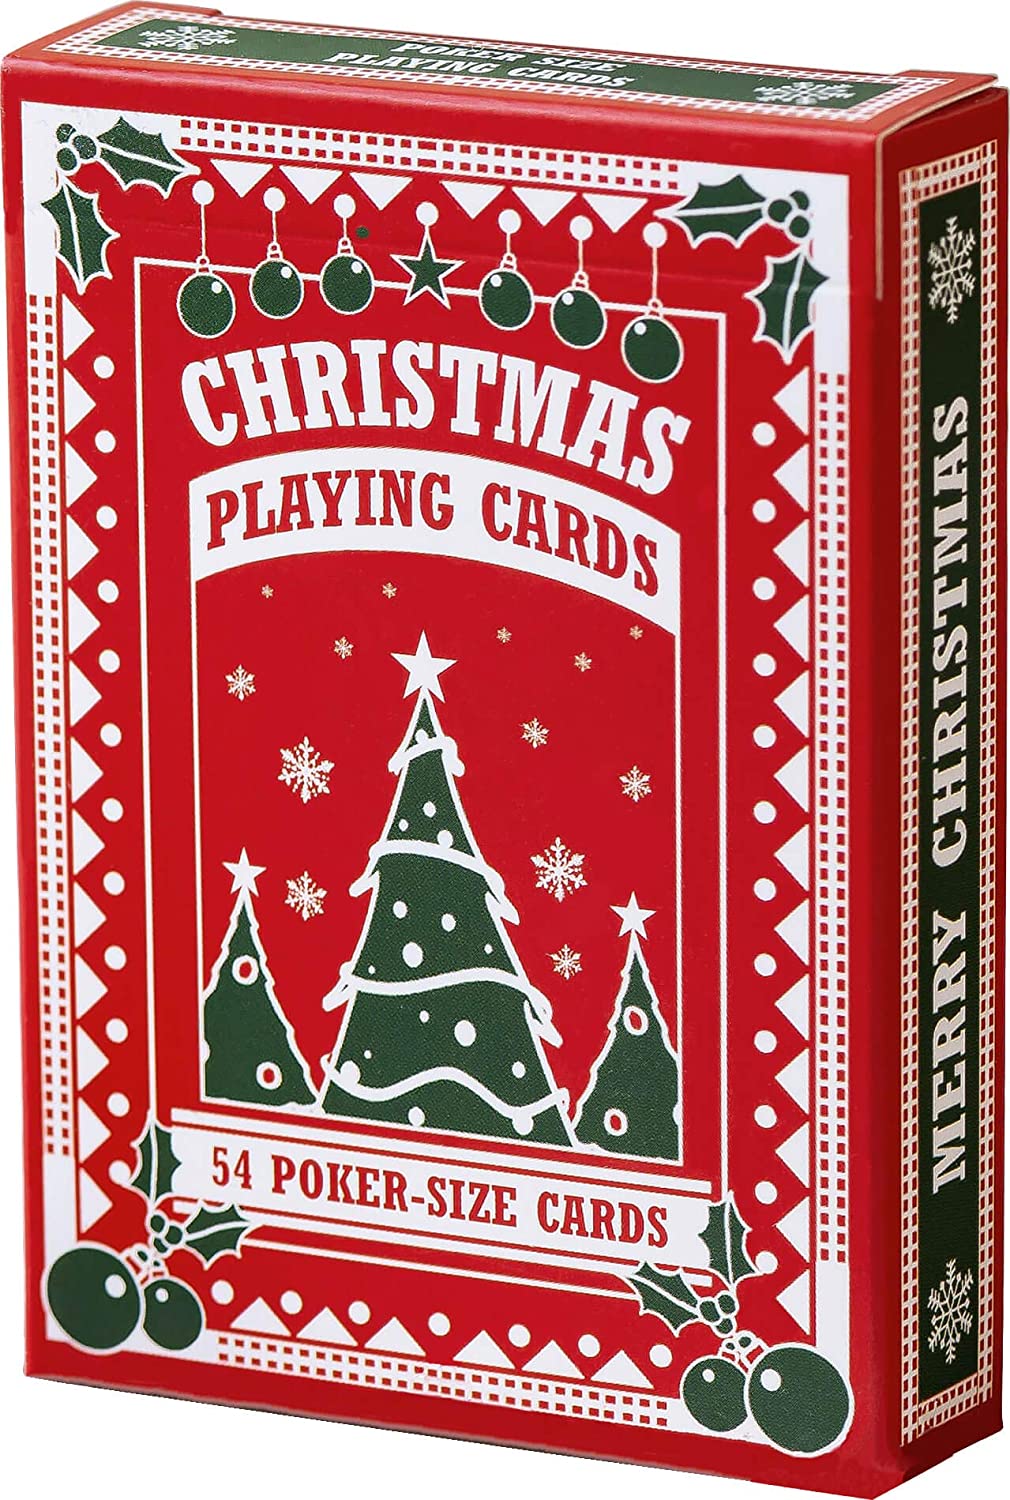 Christmas playing card design poker